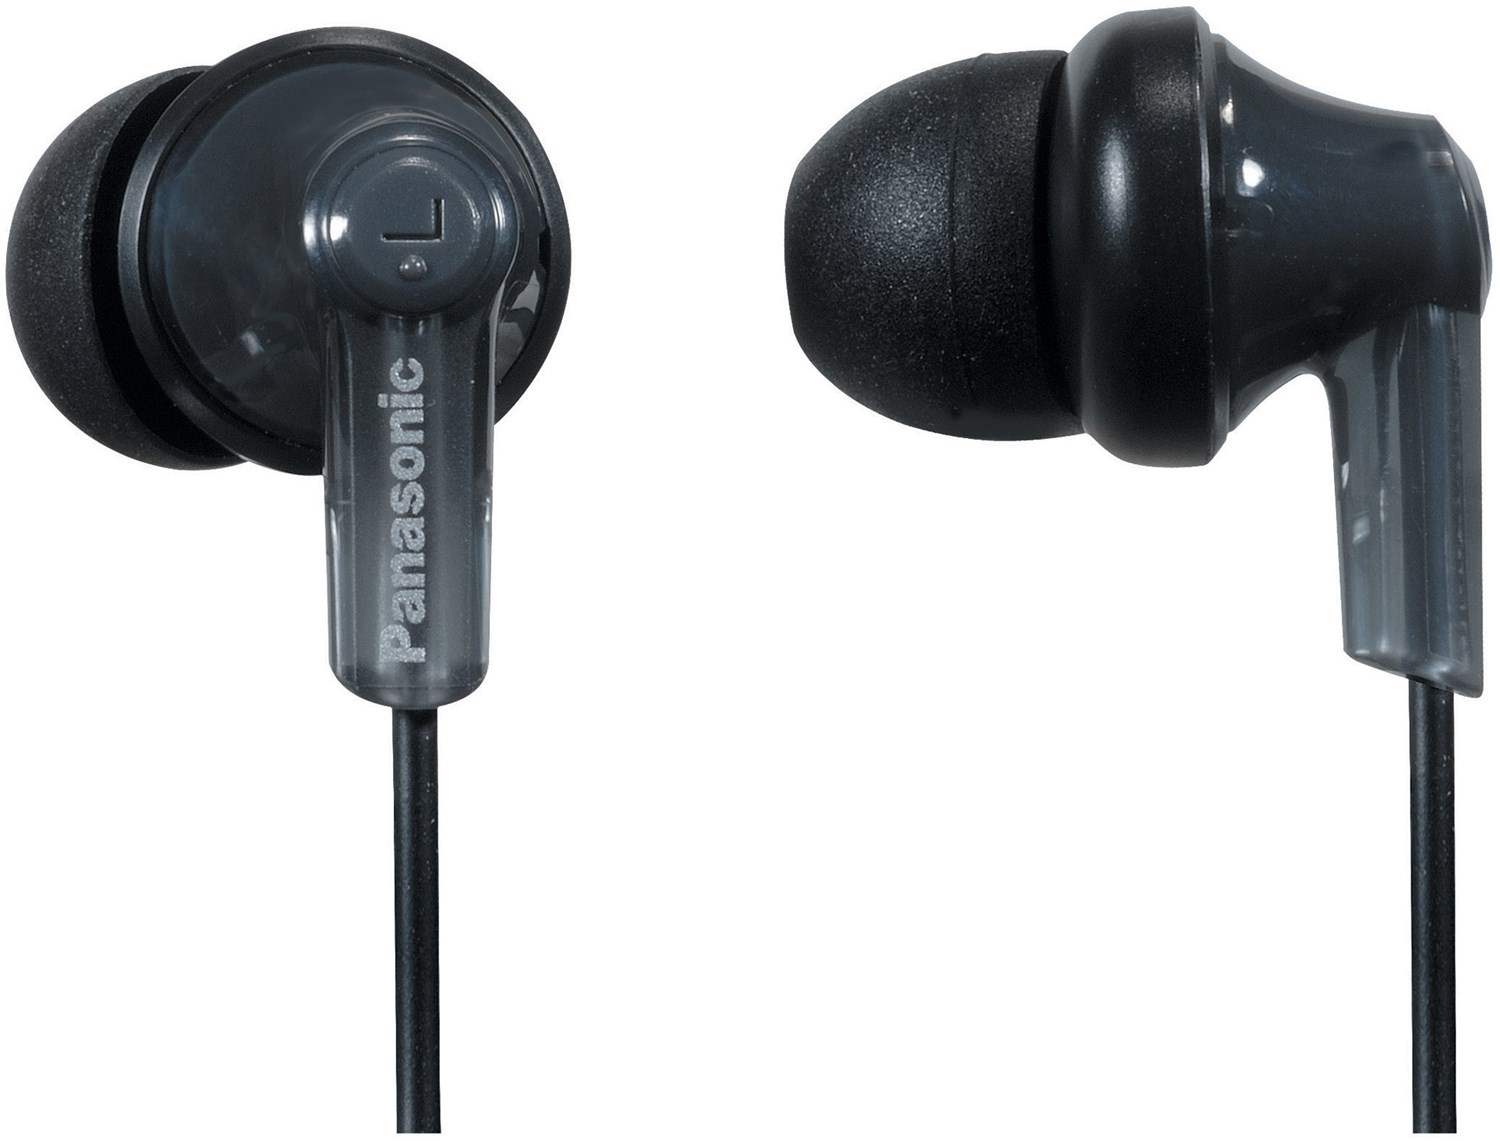 RP-HJC120E-K In-Ear-Kopfhörer mit Kabel schwarz von Panasonic